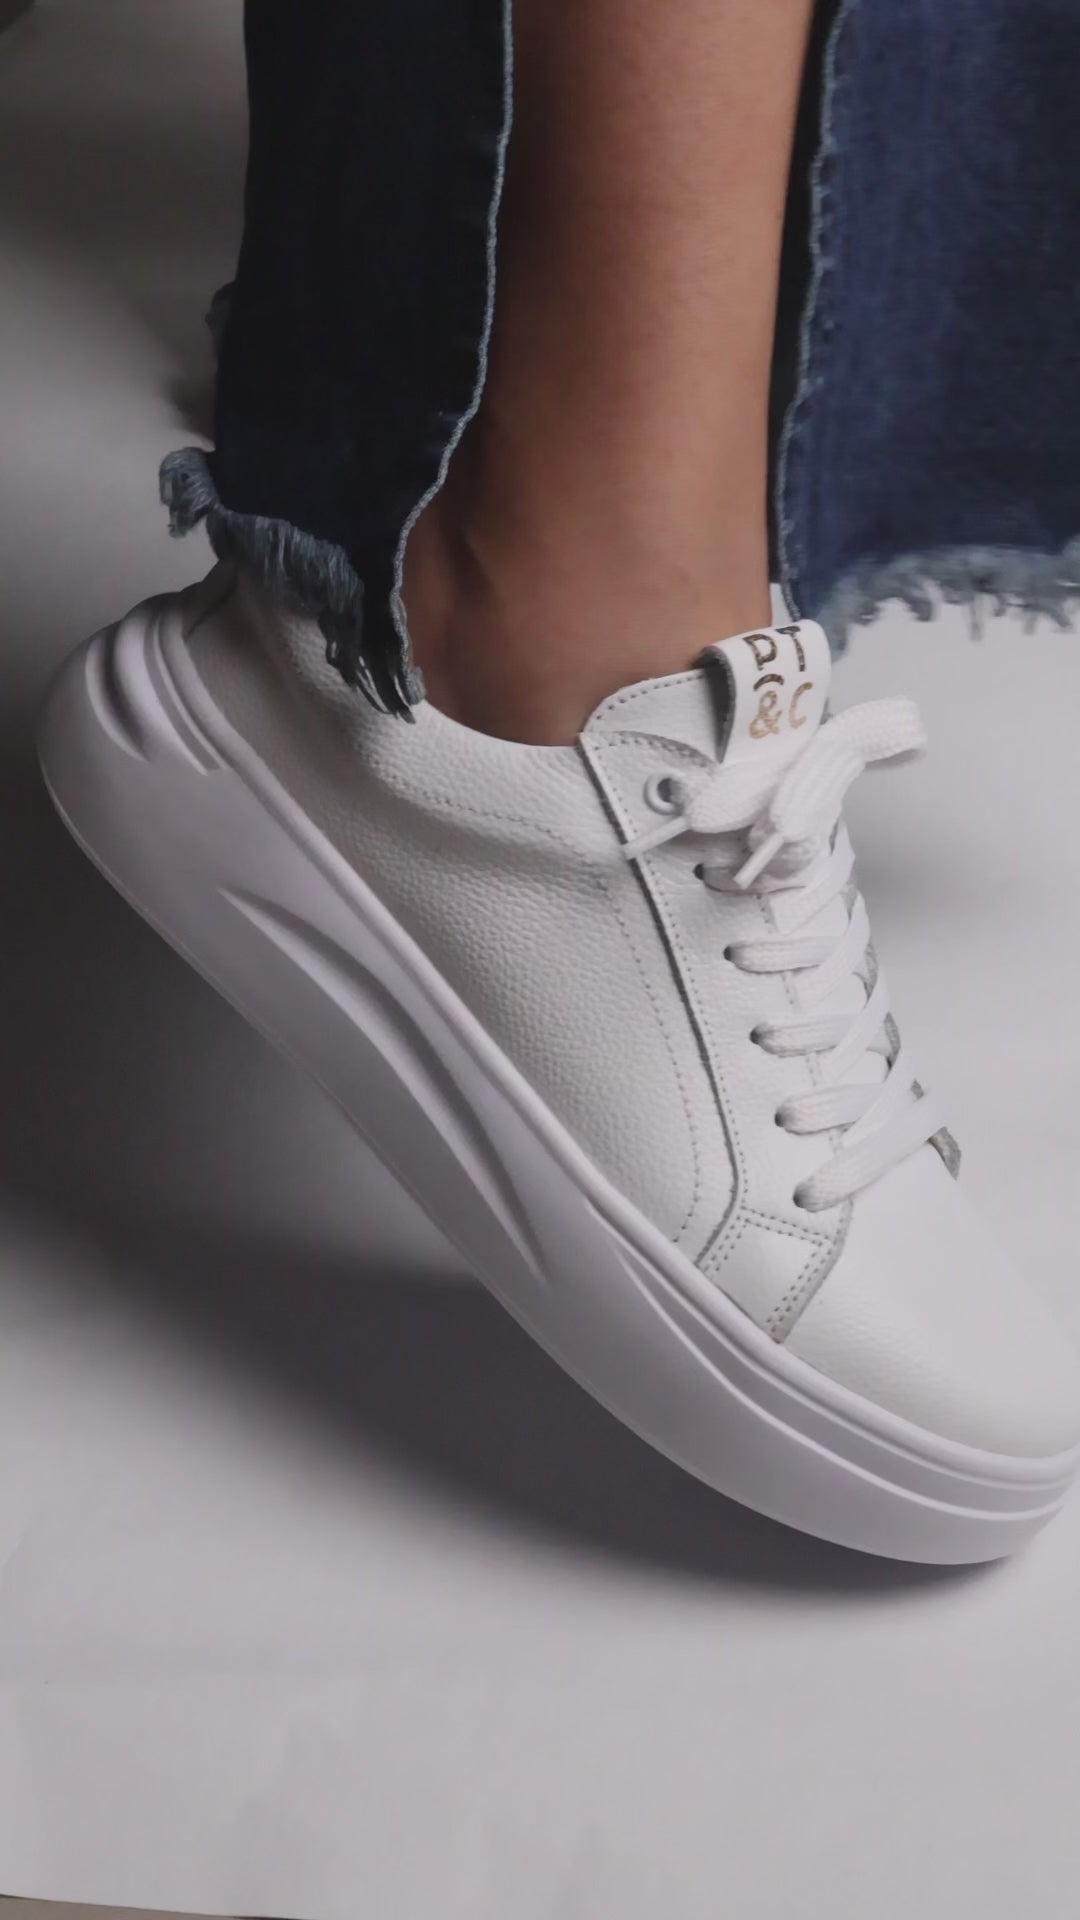 Cargar video: Zapatos blancos en cuero 100% combinación folia, suela liviana y plantilla confort.